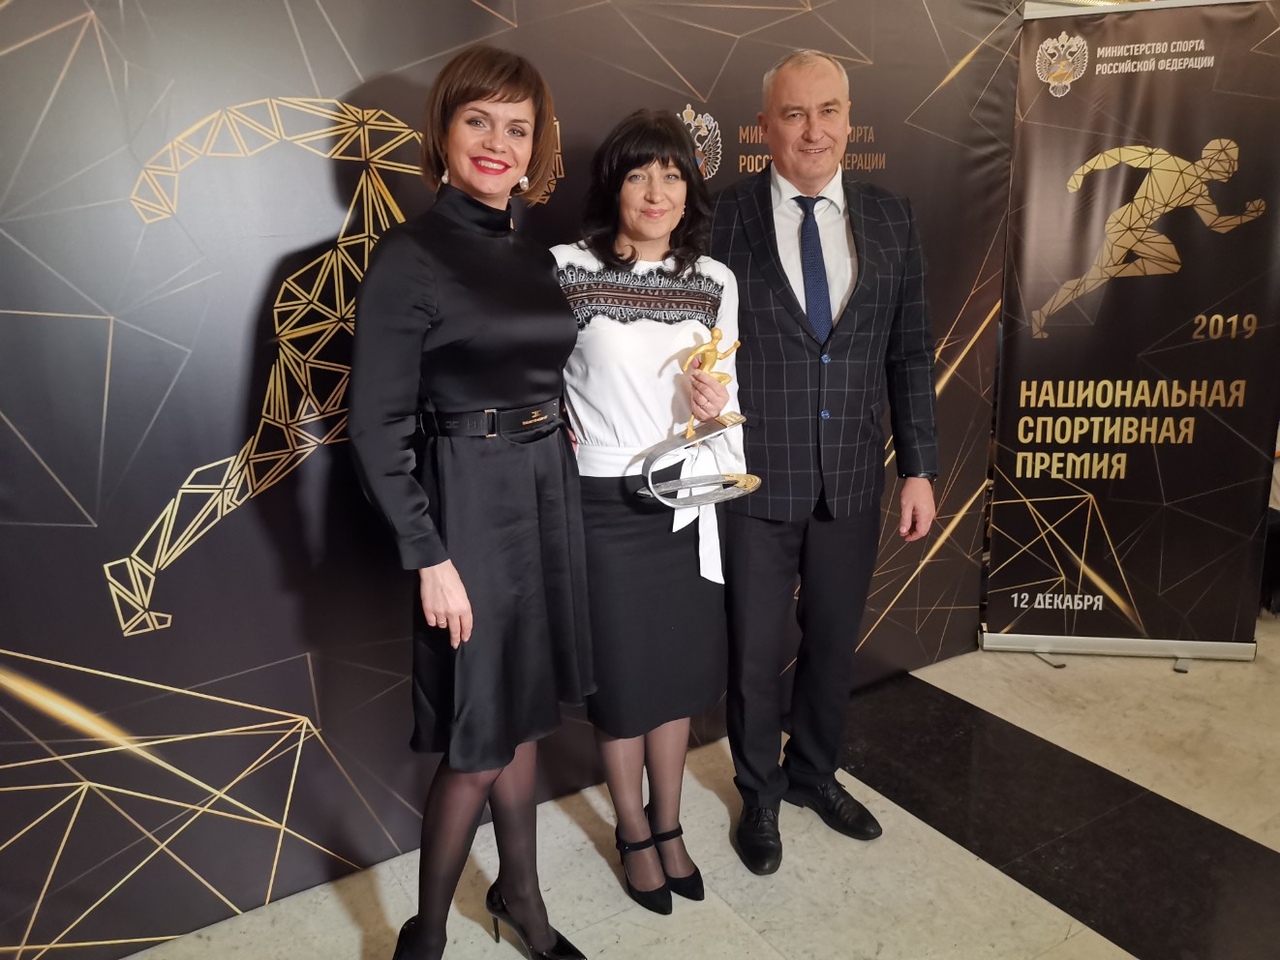 Центр адаптивного спорта Белгородской области стал лауреатом Национальной спортивной премии